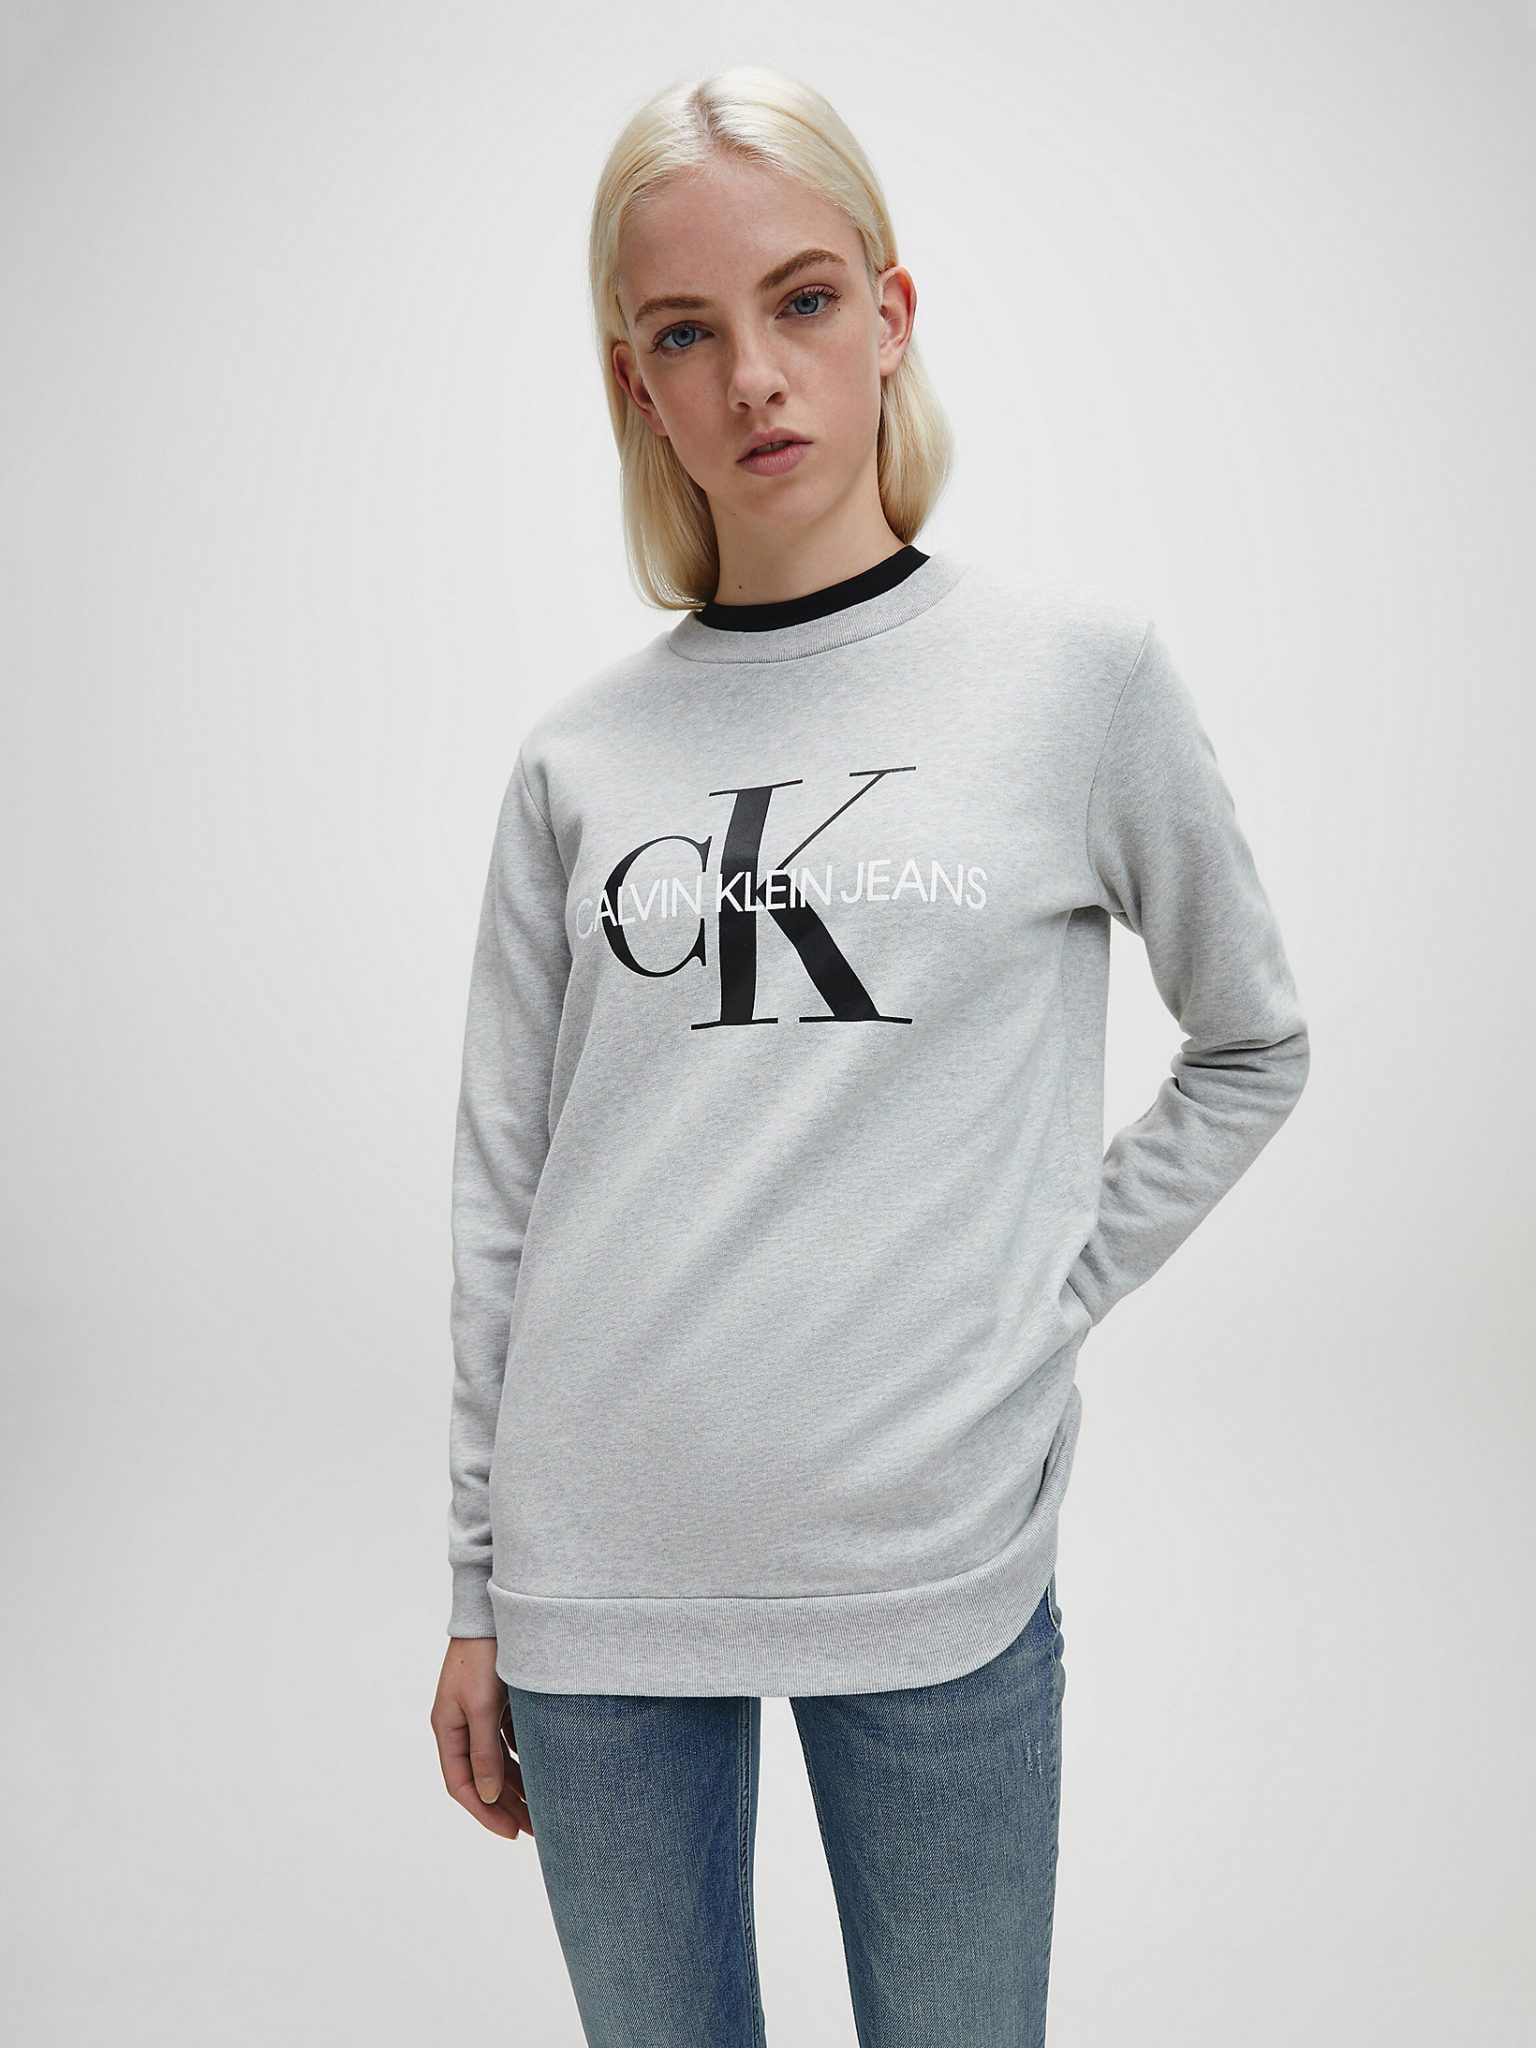 Calvin Klein Women 's Top with Logo. 8719855802227 #178